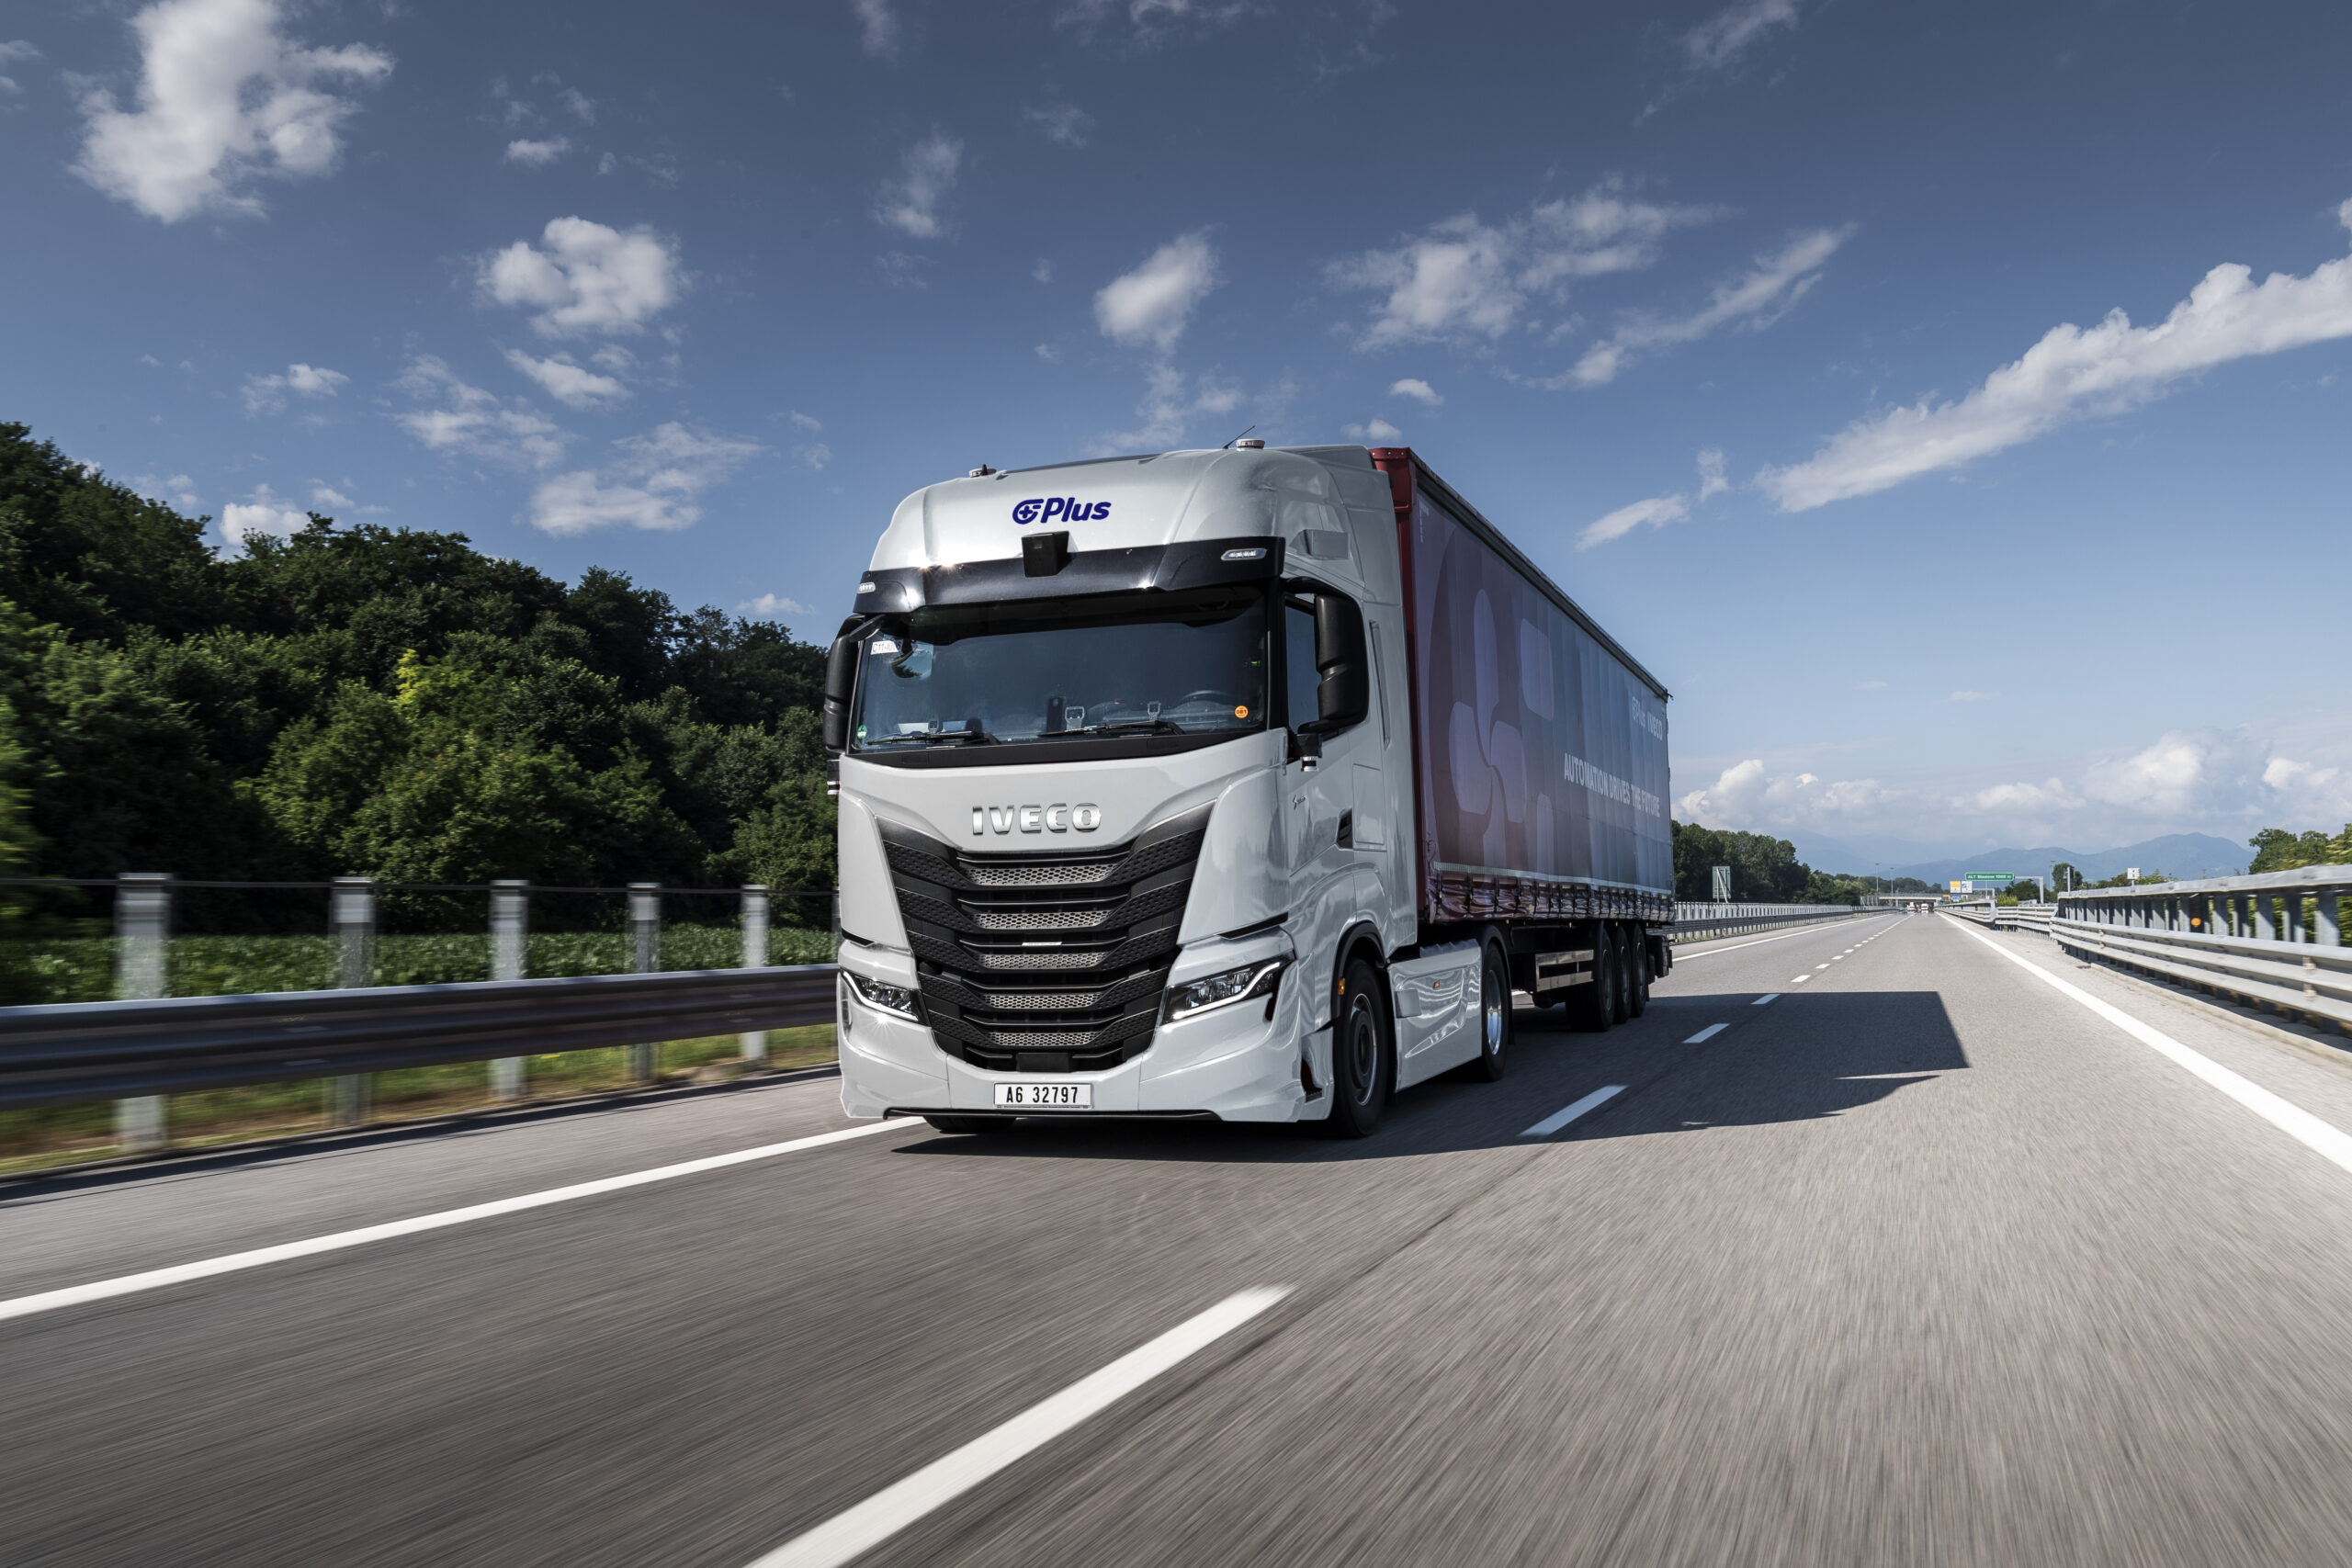 IVECO en Plus voltooien met succes de eerste fase van de pilot voor autonome vrachtwagens, klaar voor tests op de openbare weg in Europa